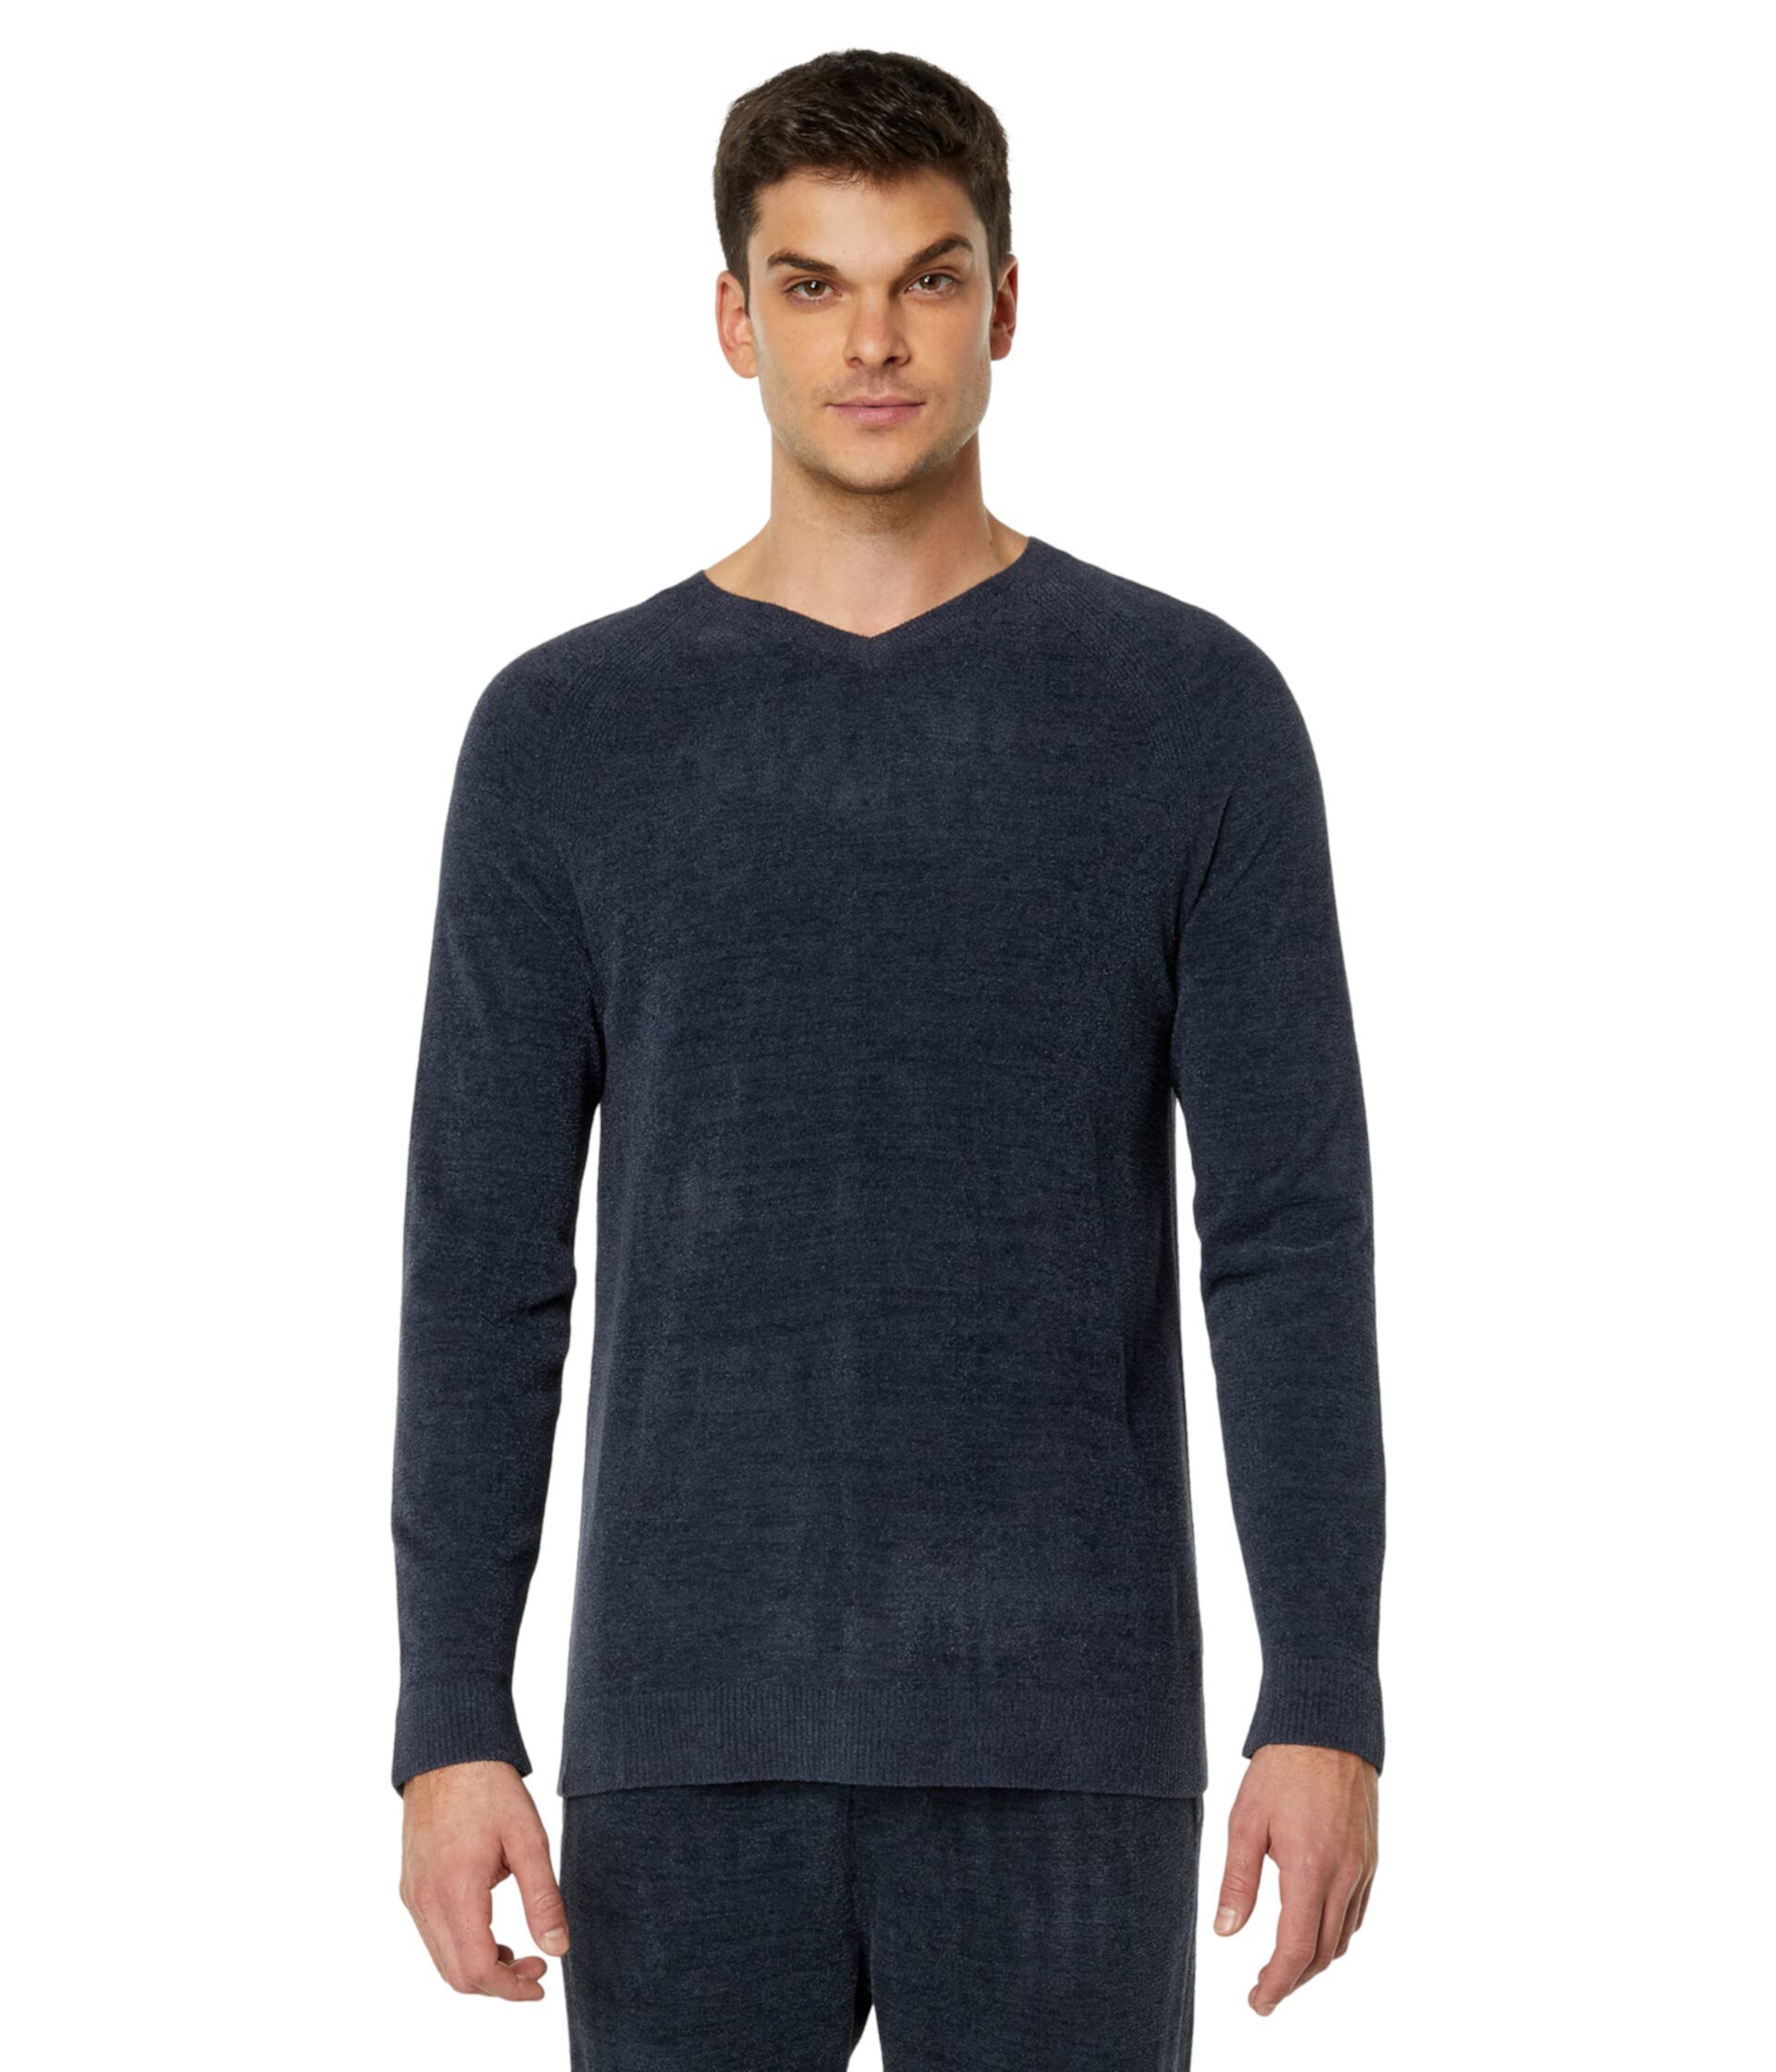 Пуловер CozyChic Ultra Lite® с V-образным вырезом Barefoot Dreams